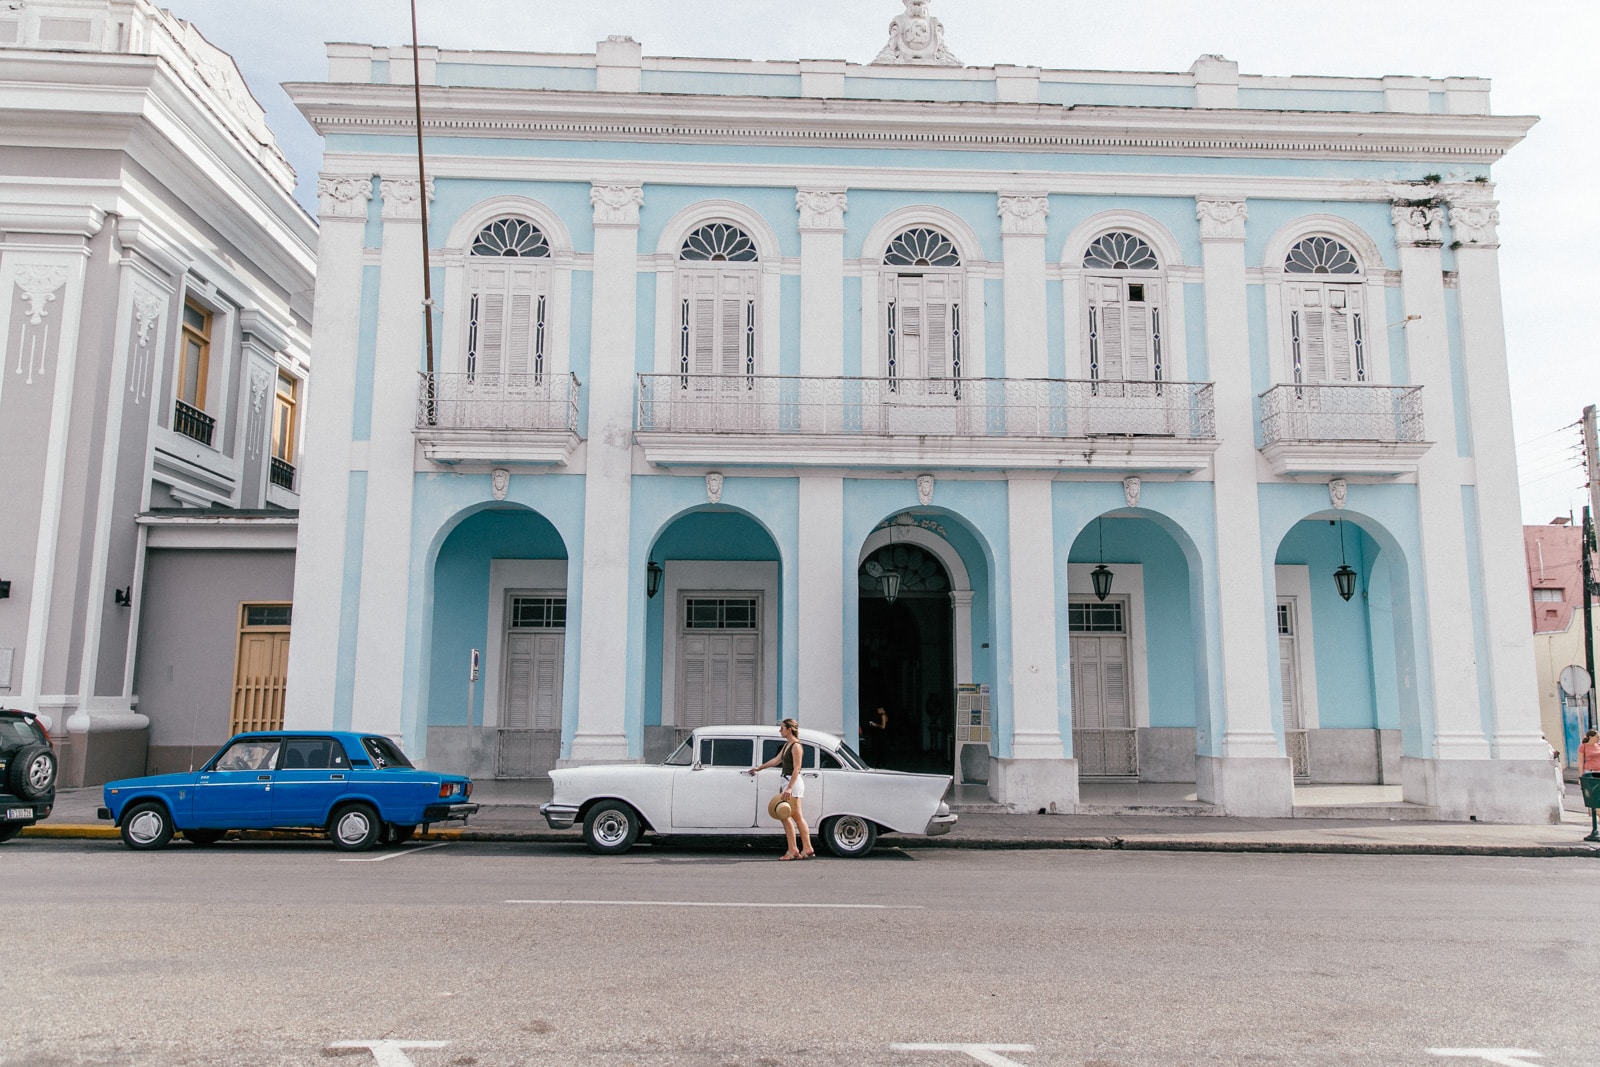 ID5A8910 - Notre voyage à Cuba : Itinéraire et conseils